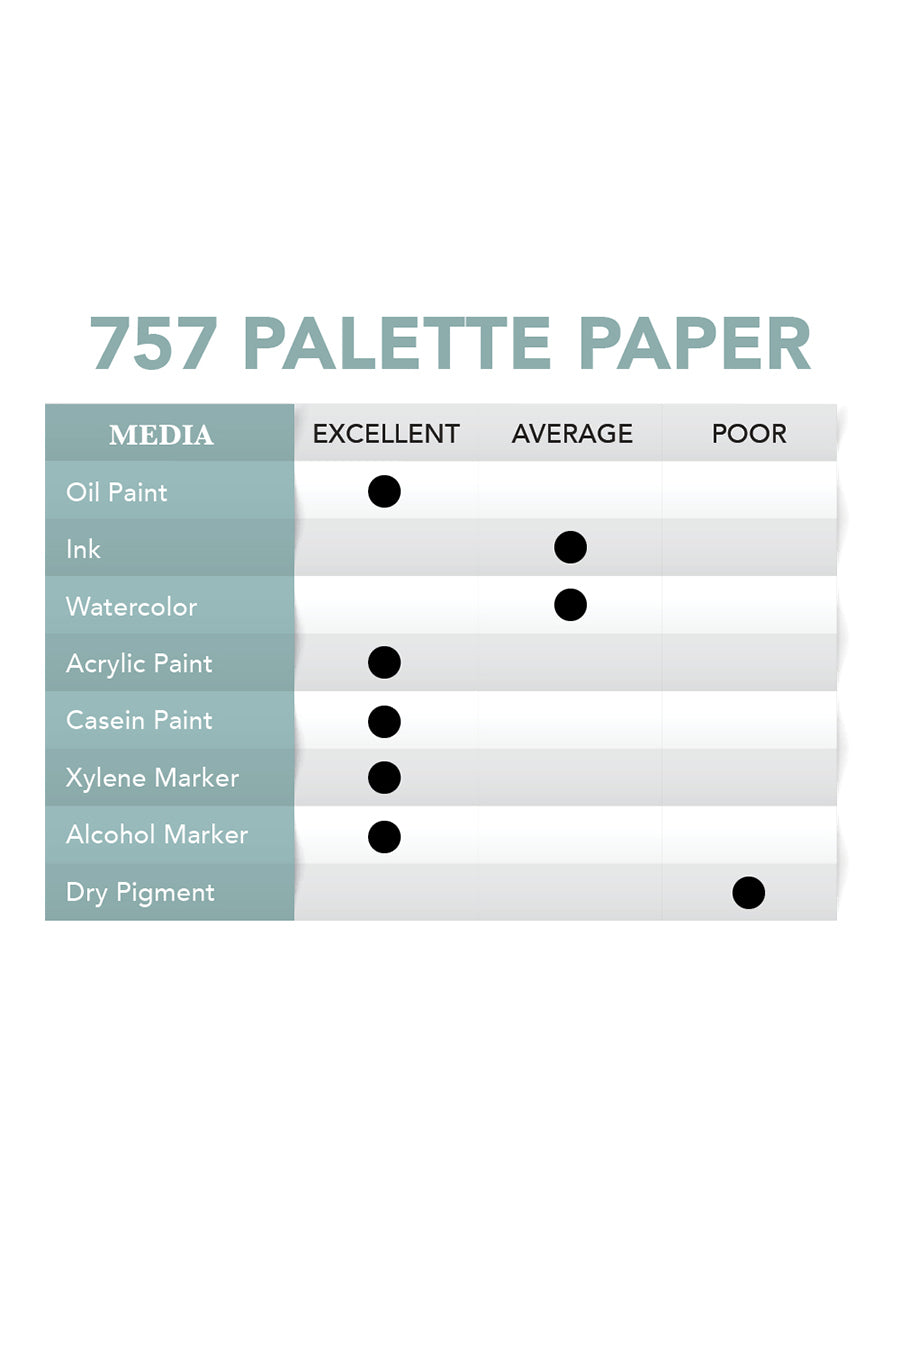 Disposable Paper Palette - The Oil Paint Store